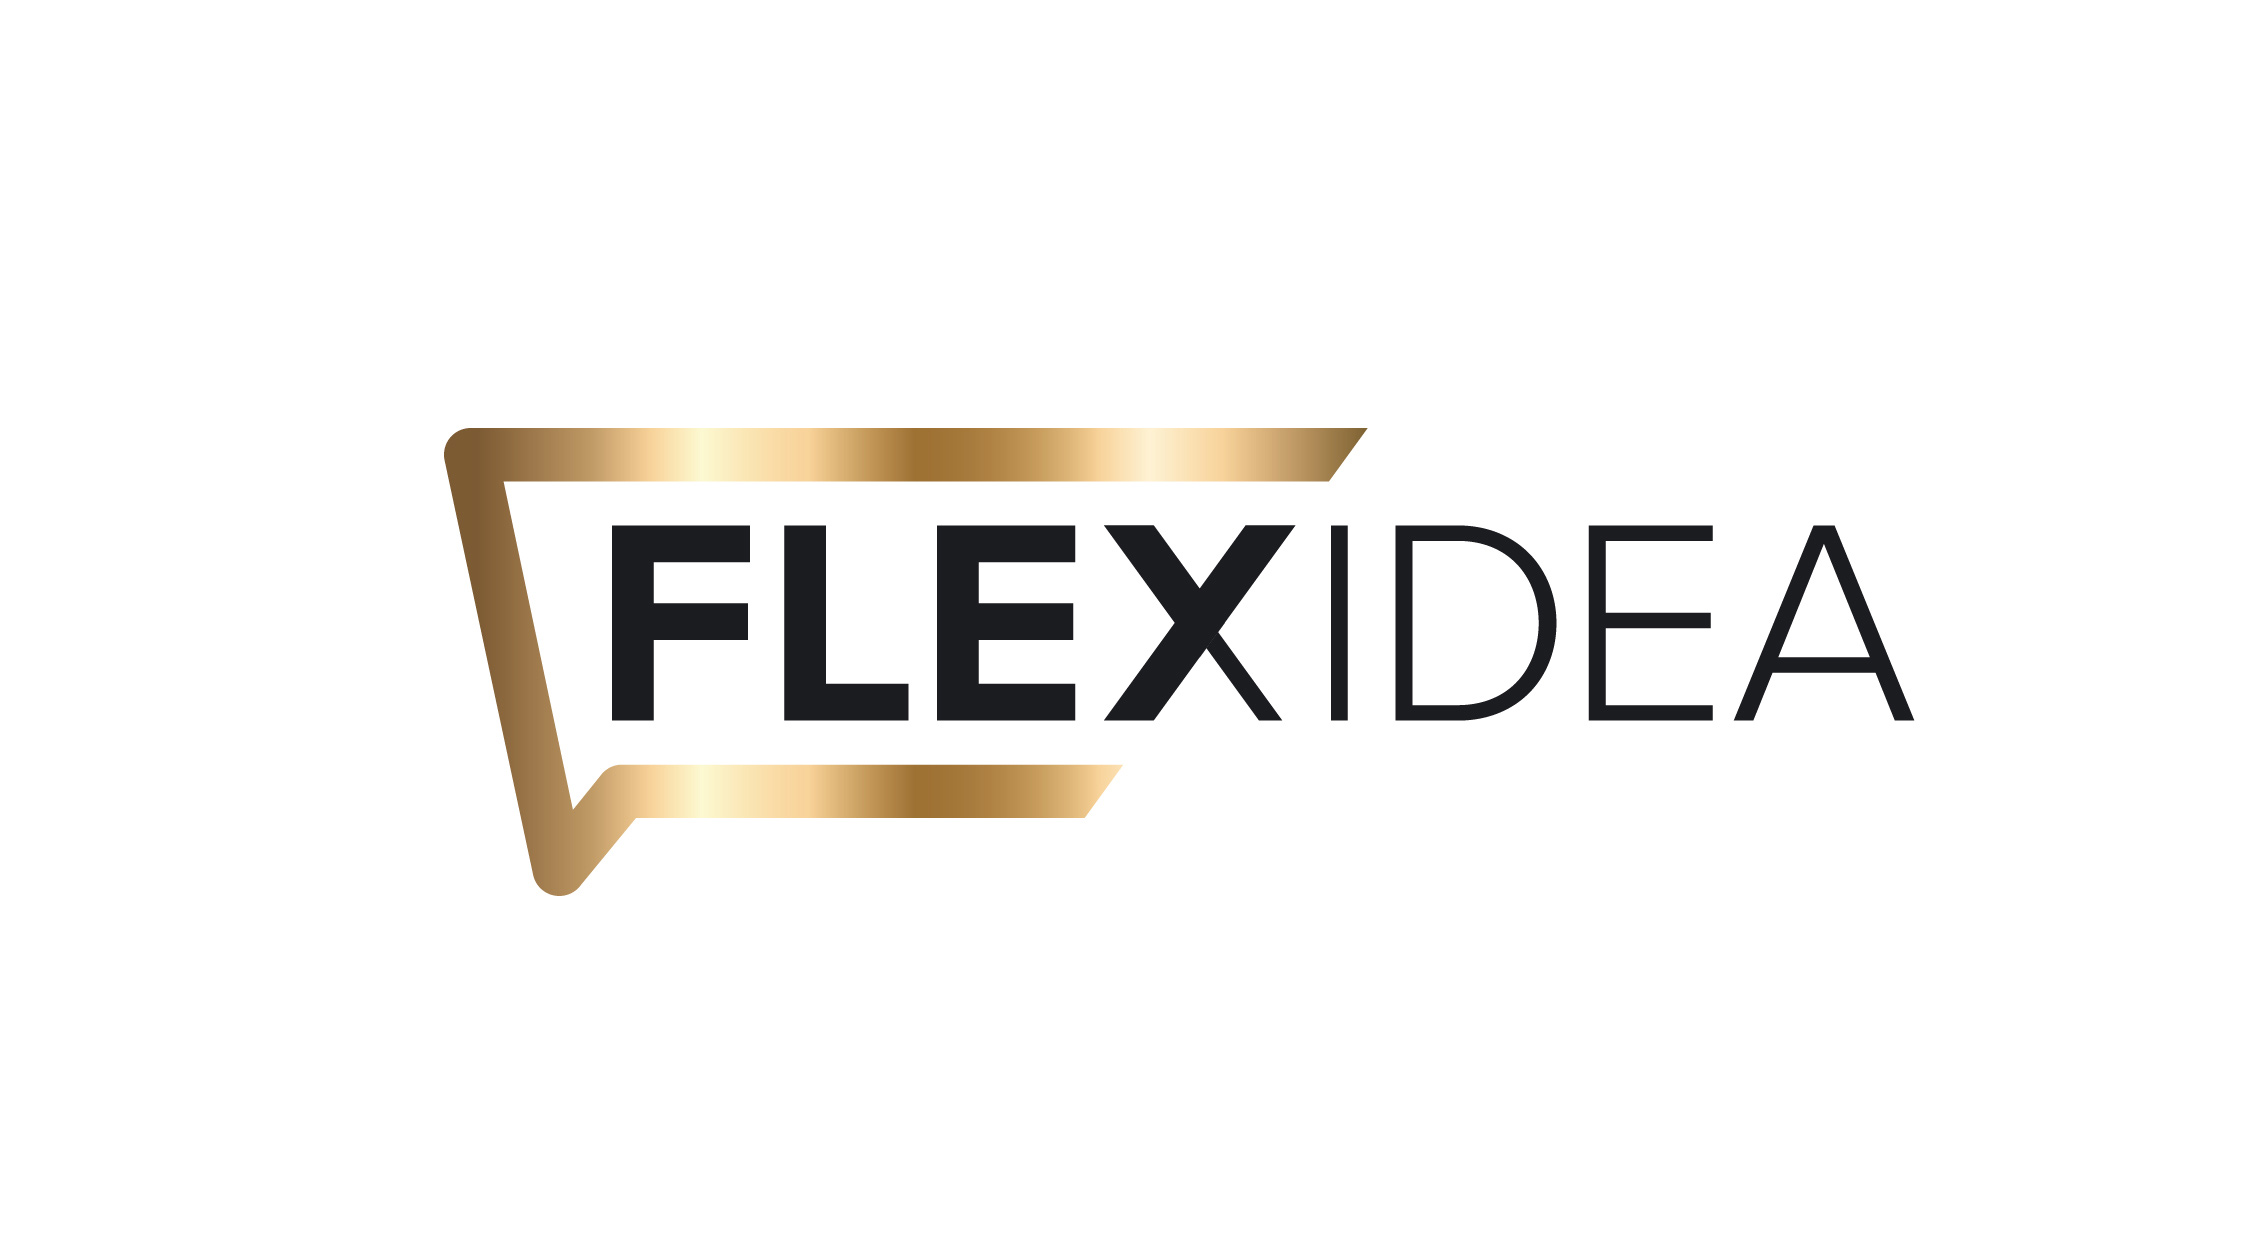 Flexidea